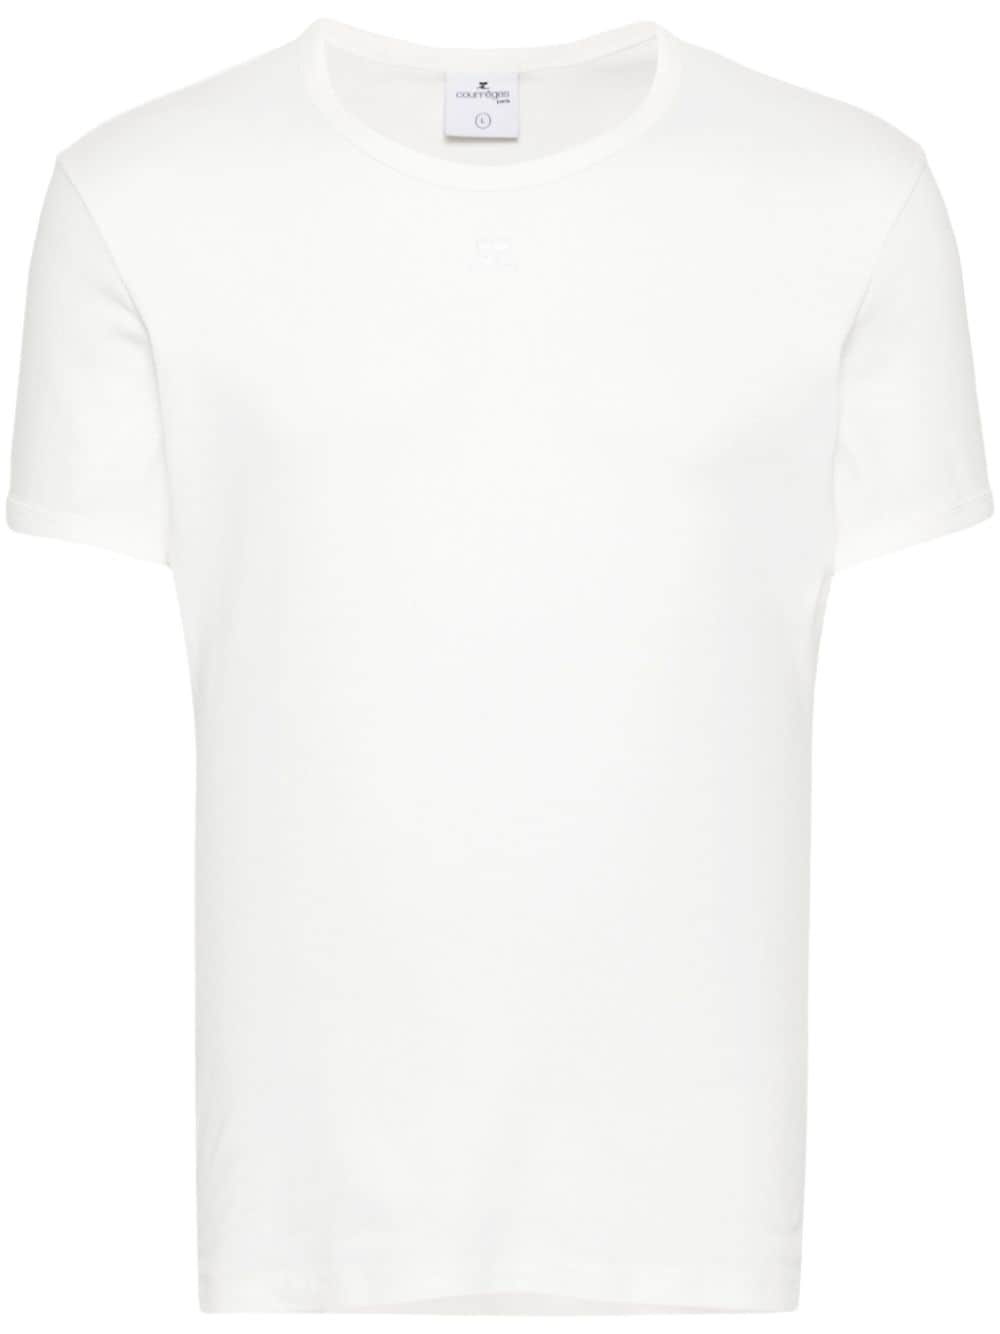 Courrèges - T-Shirt white - Lothaire